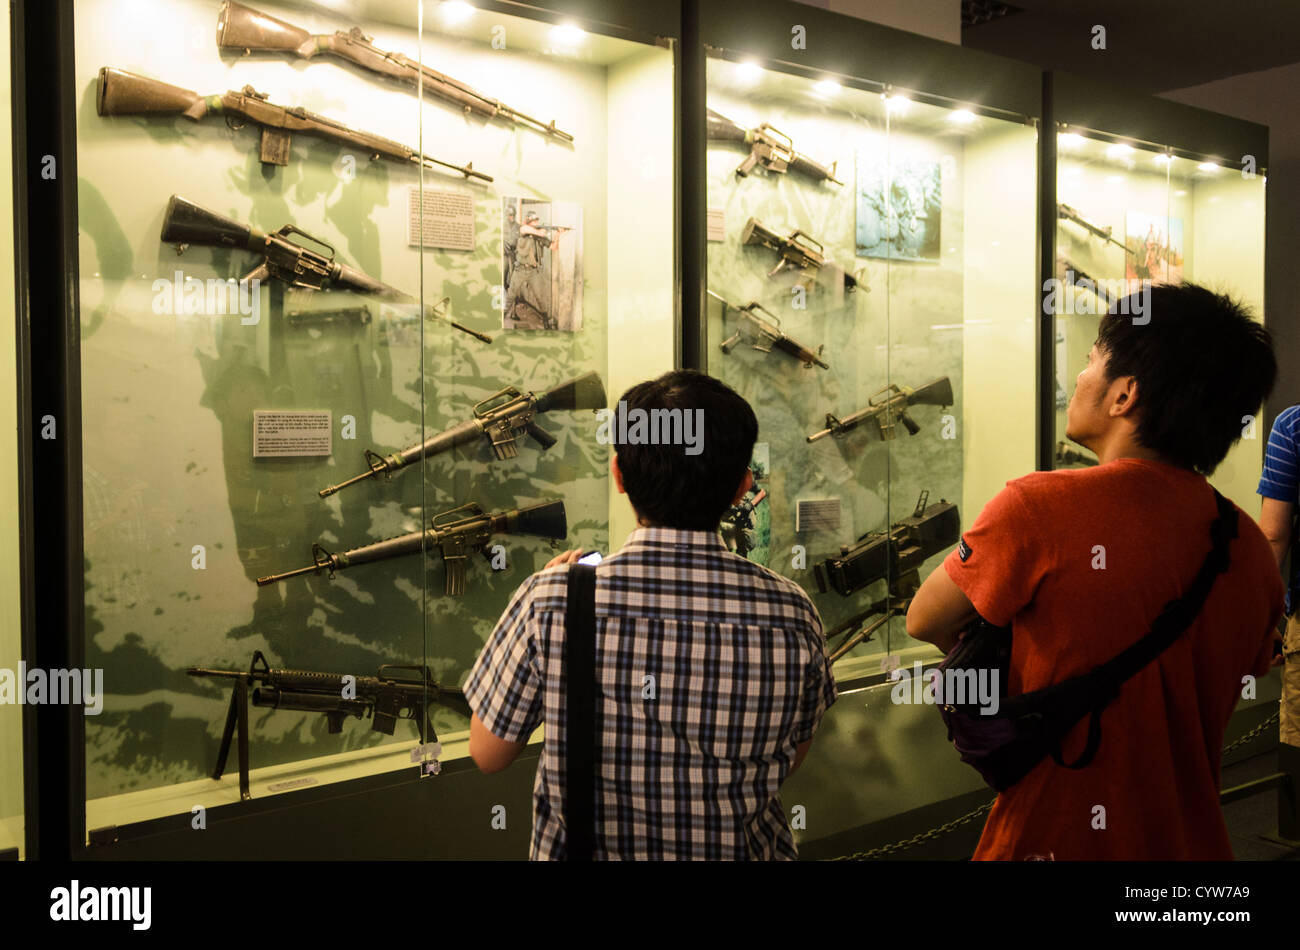 La città di HO CHI MINH, Vietnam - due visitatori guardano ad un involucro di vetro di alcune delle armi usate dagli Americani e sudvietnamiti forze durante la Guerra del Vietnam presso il Museo dei Resti della Guerra nella città di Ho Chi Minh (Saigon), Vietnam. Foto Stock